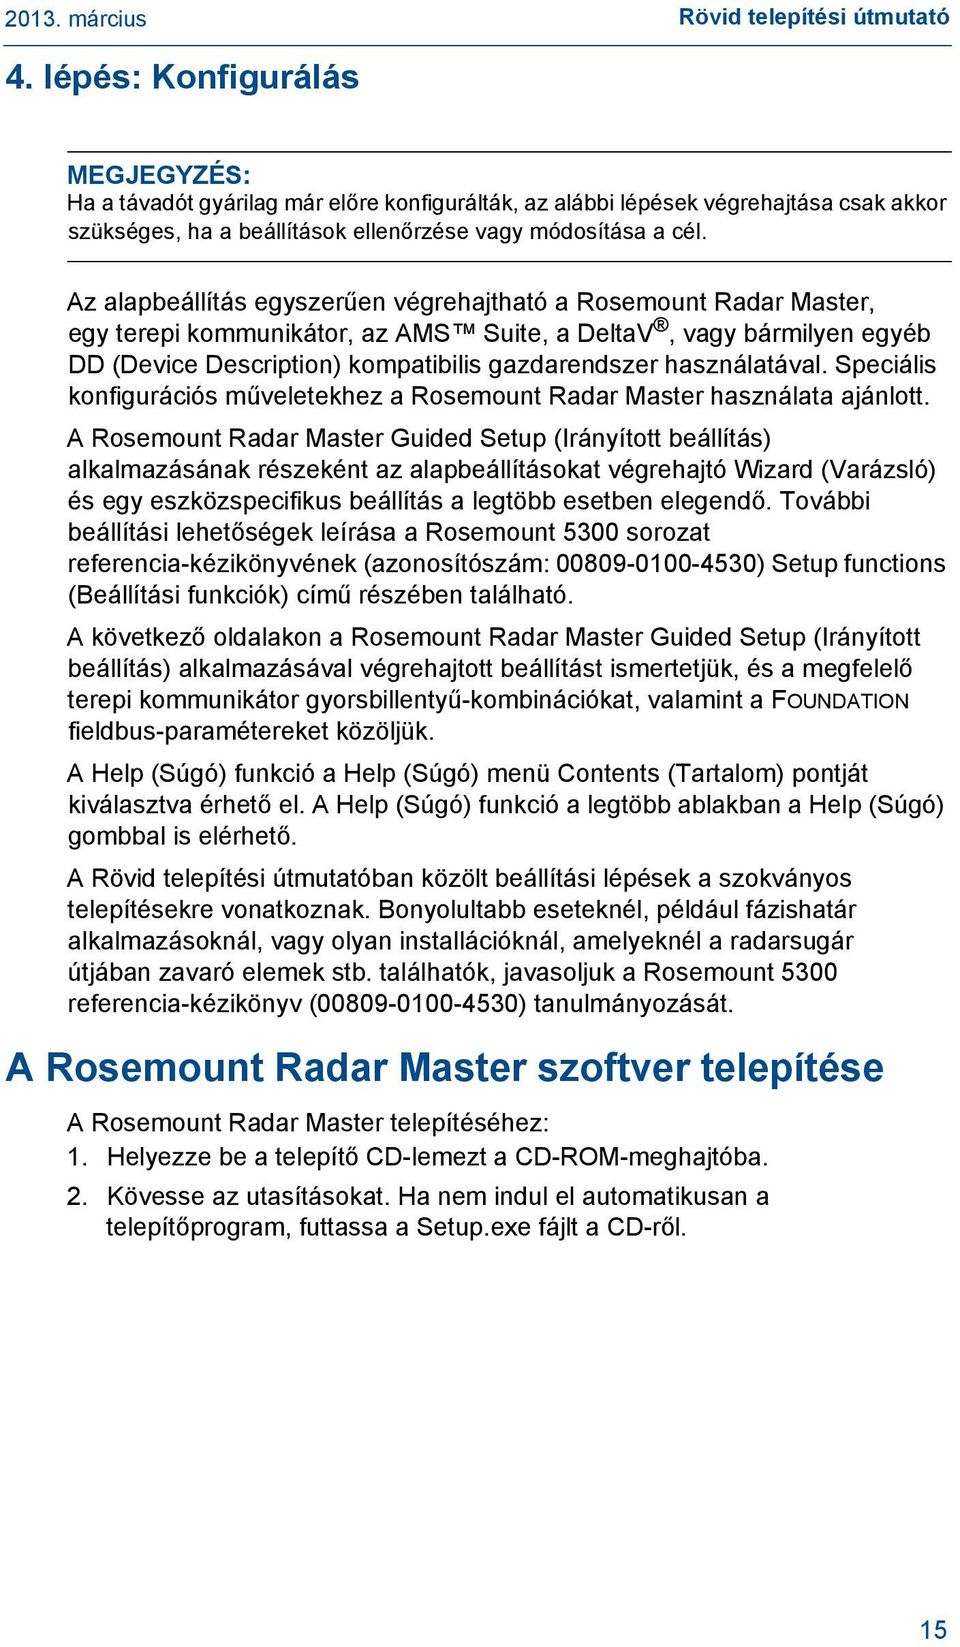 Az alapbeállítás egyszerűen végrehajtható a Rosemount Radar Master, egy terepi kommunikátor, az AMS Suite, a DeltaV, vagy bármilyen egyéb DD (Device Description) kompatibilis gazdarendszer